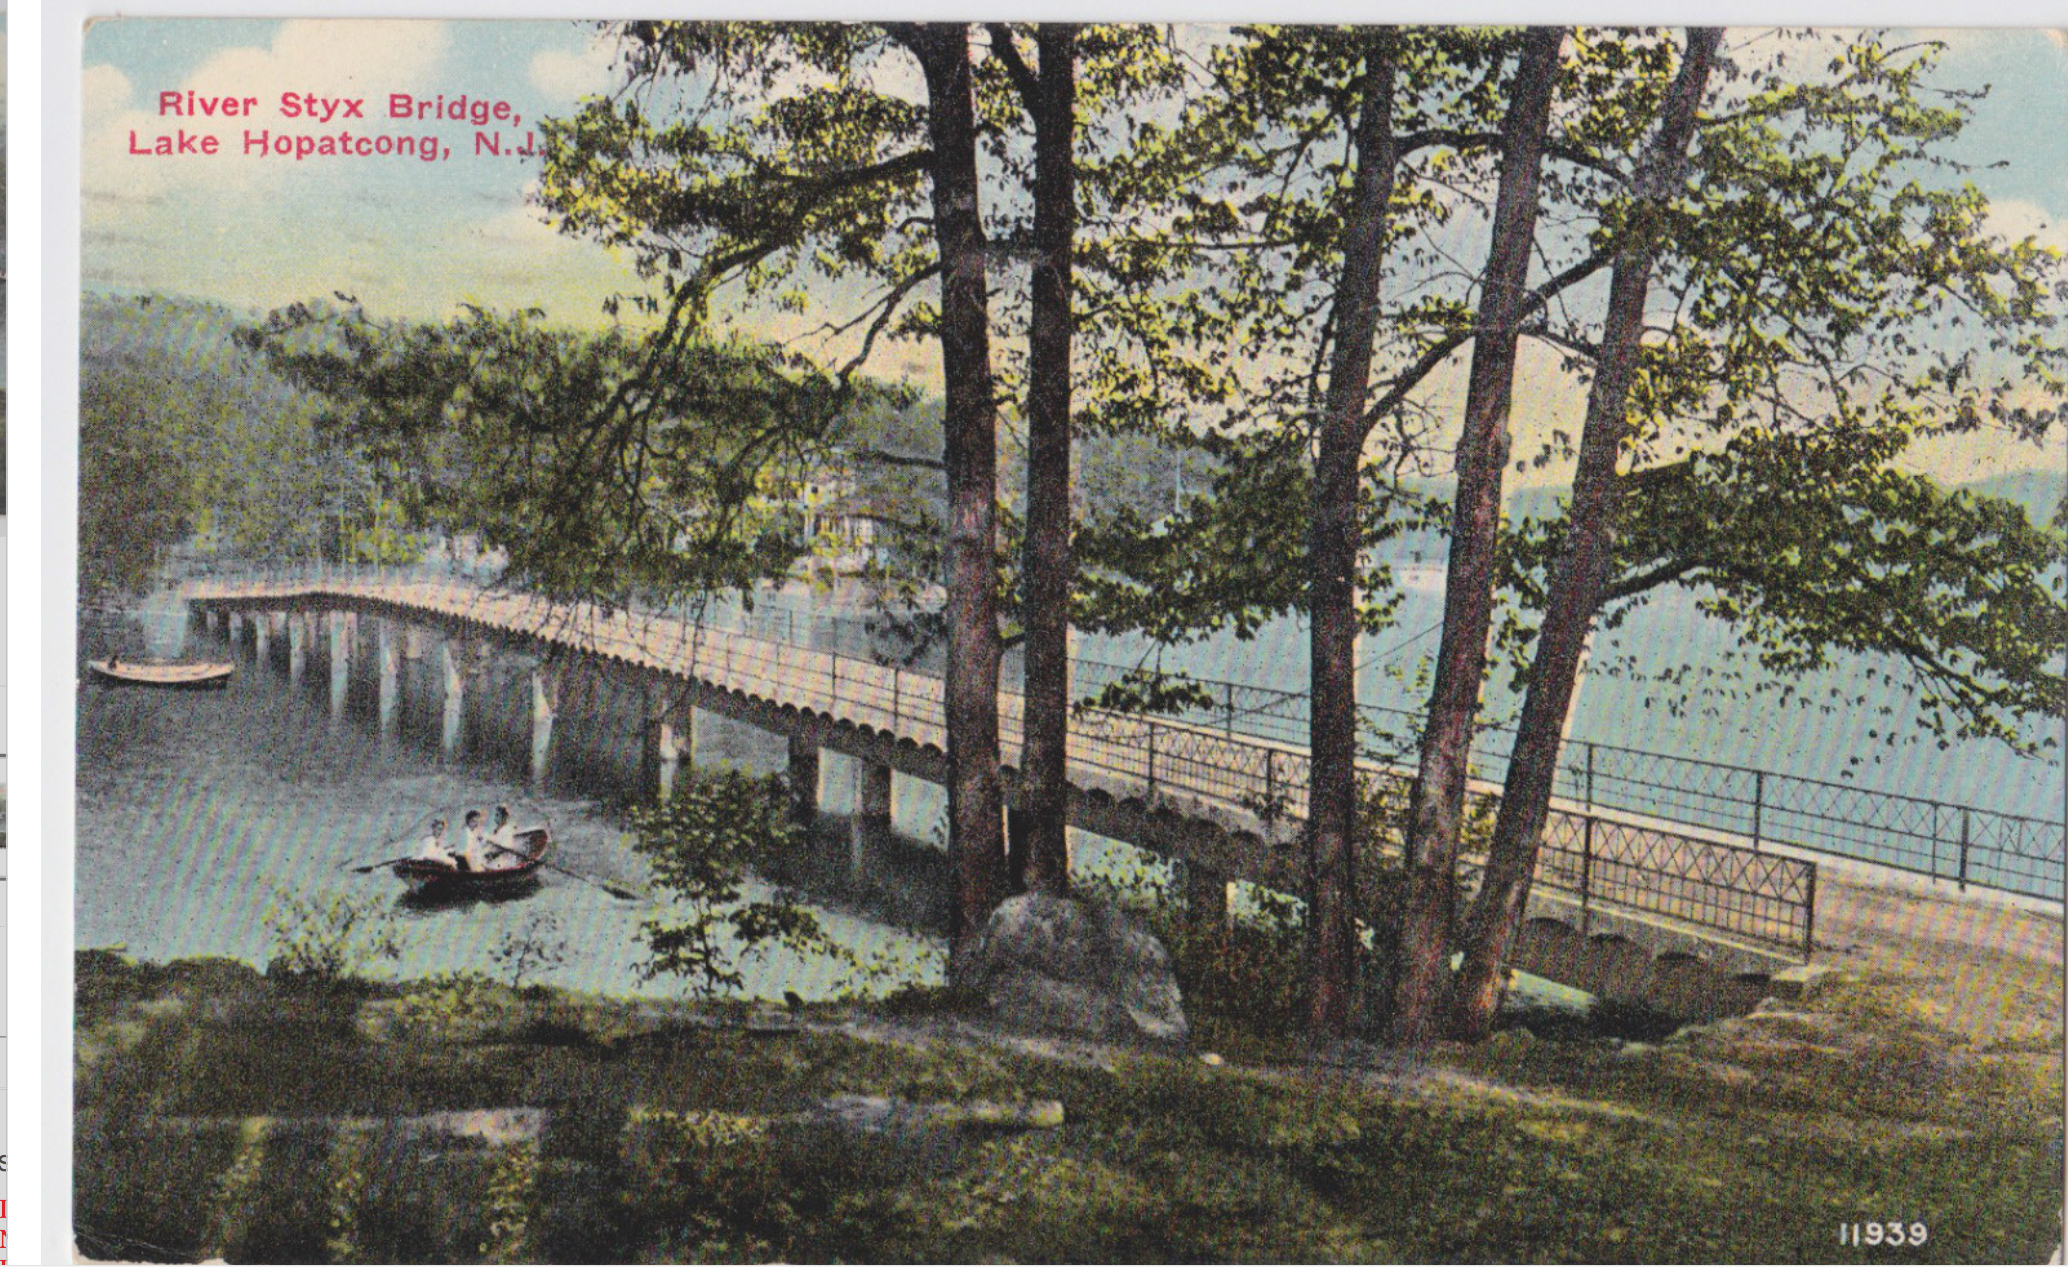 Lake Hopatcong - River Styxx Bridge - 1916